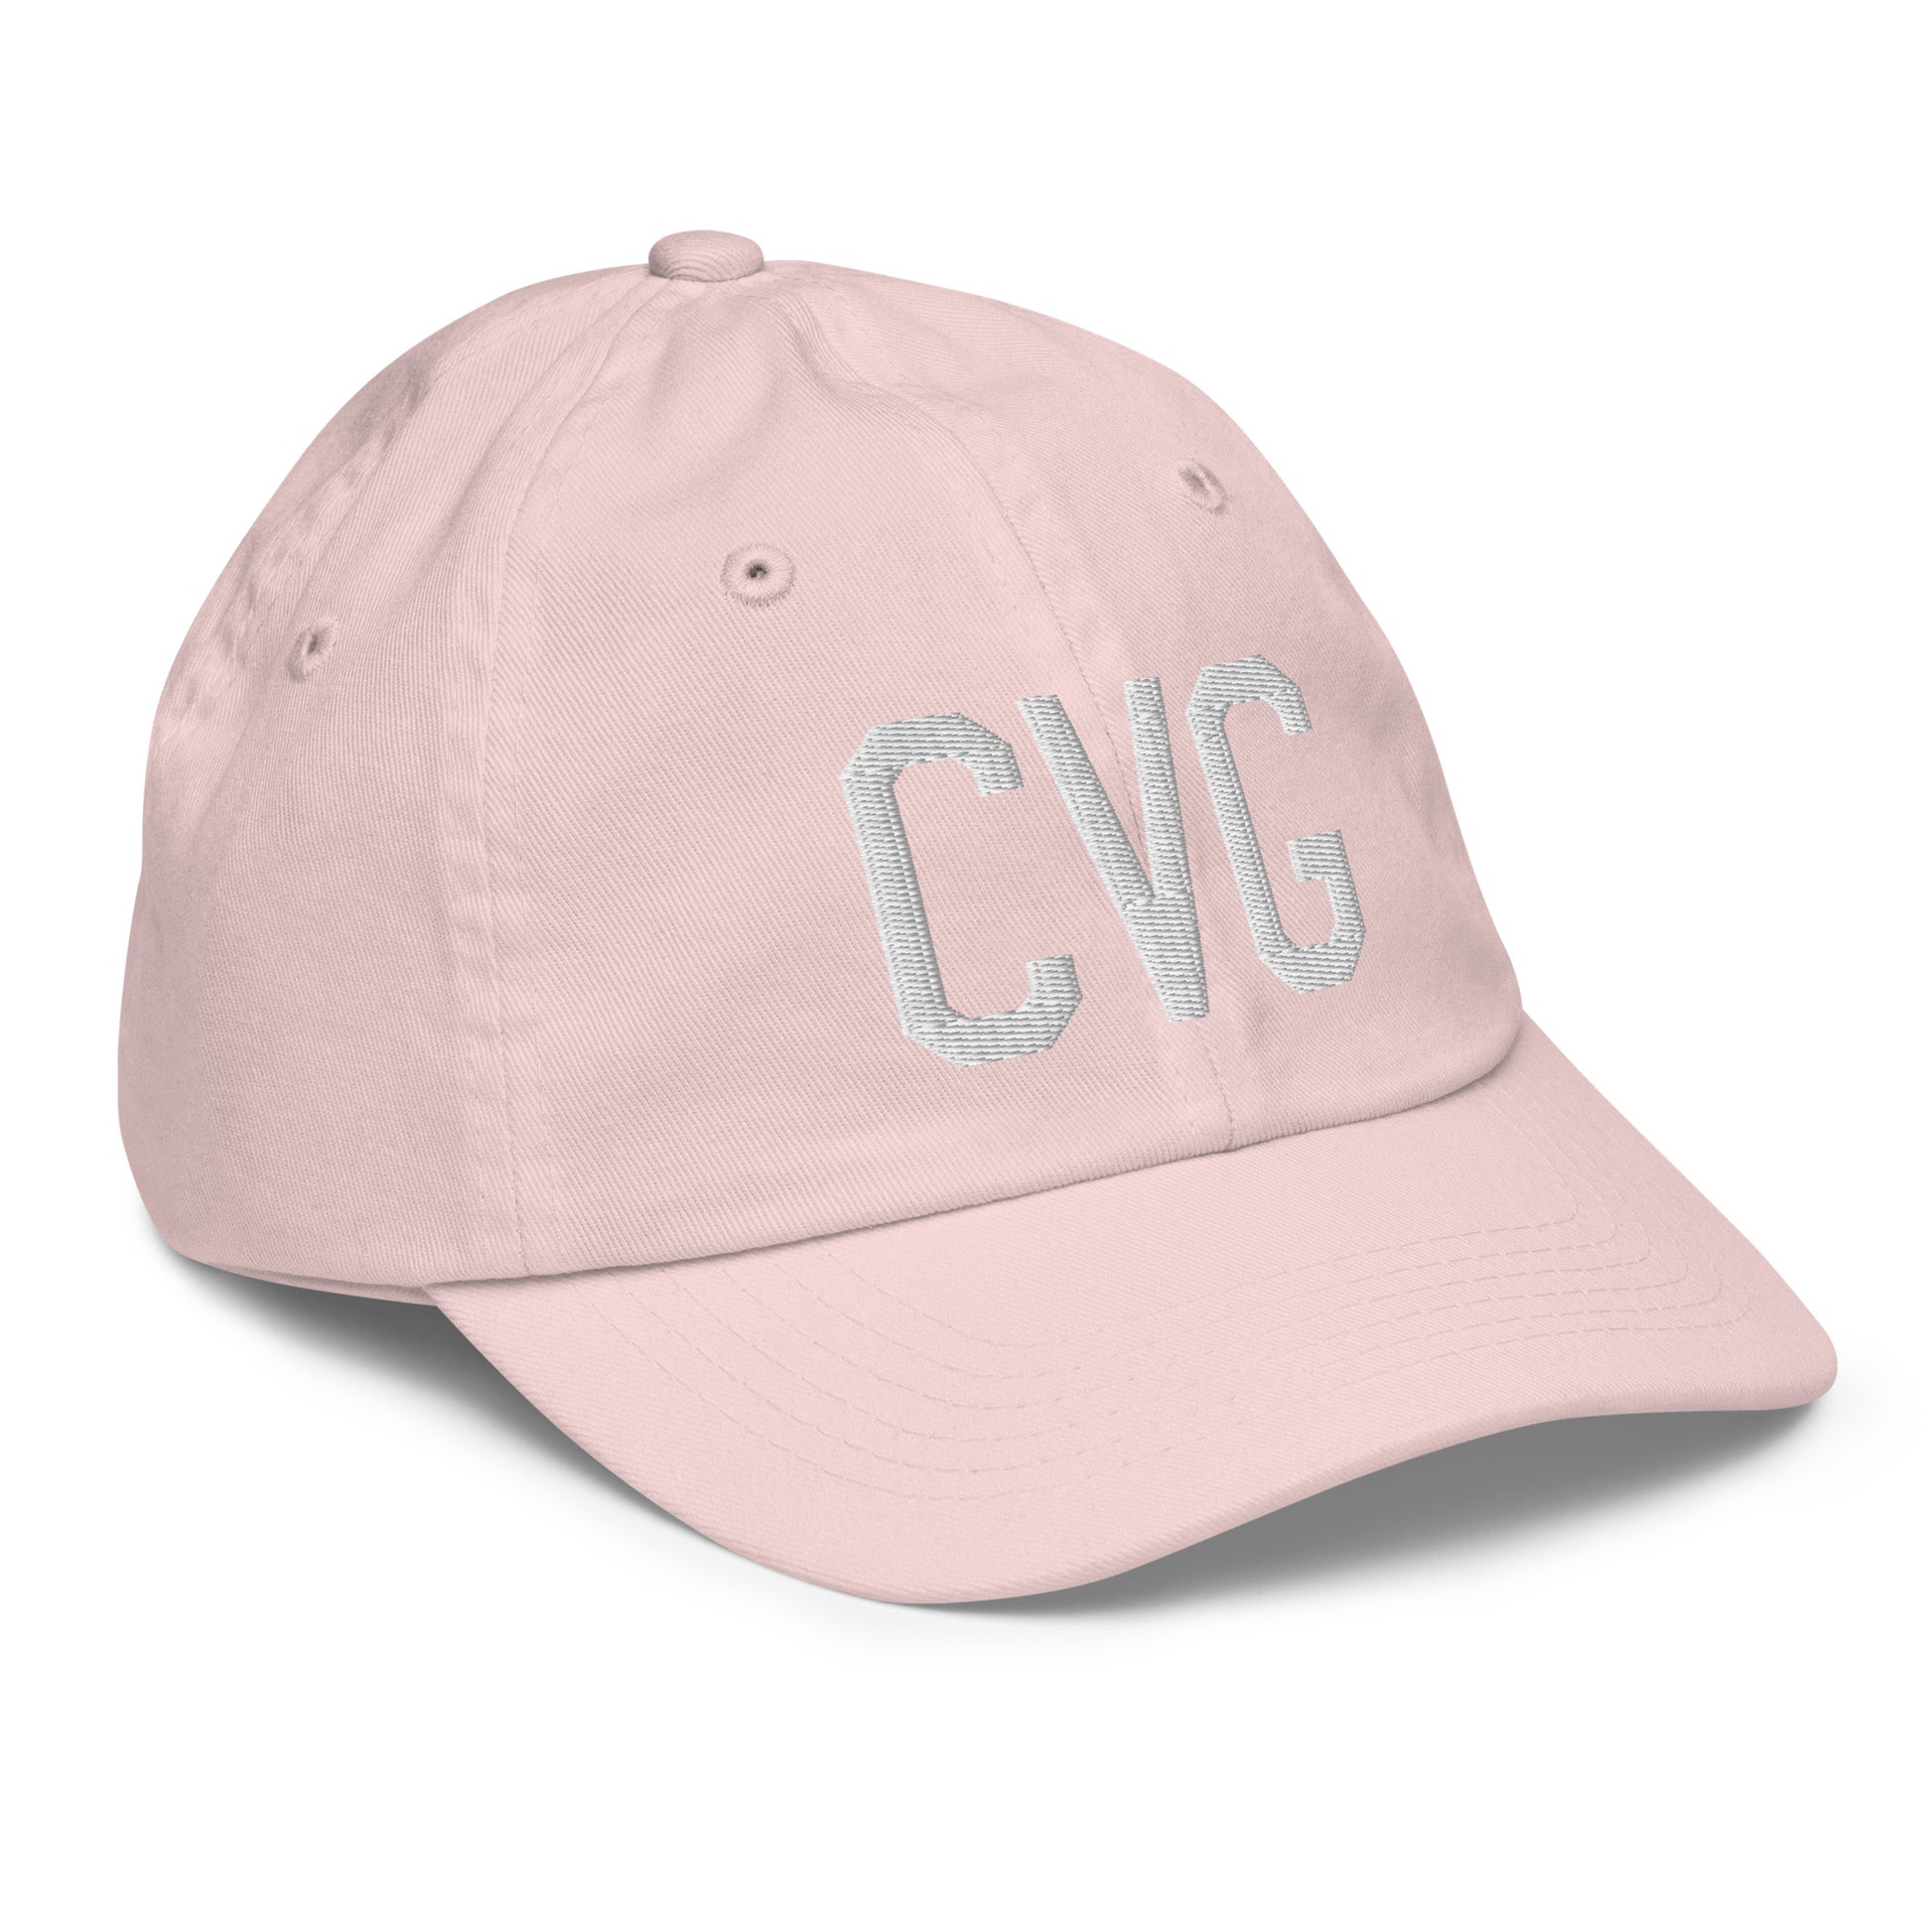 Airport Code Kid's Baseball Cap - White • CVG Cincinnati • YHM Designs - Image 32